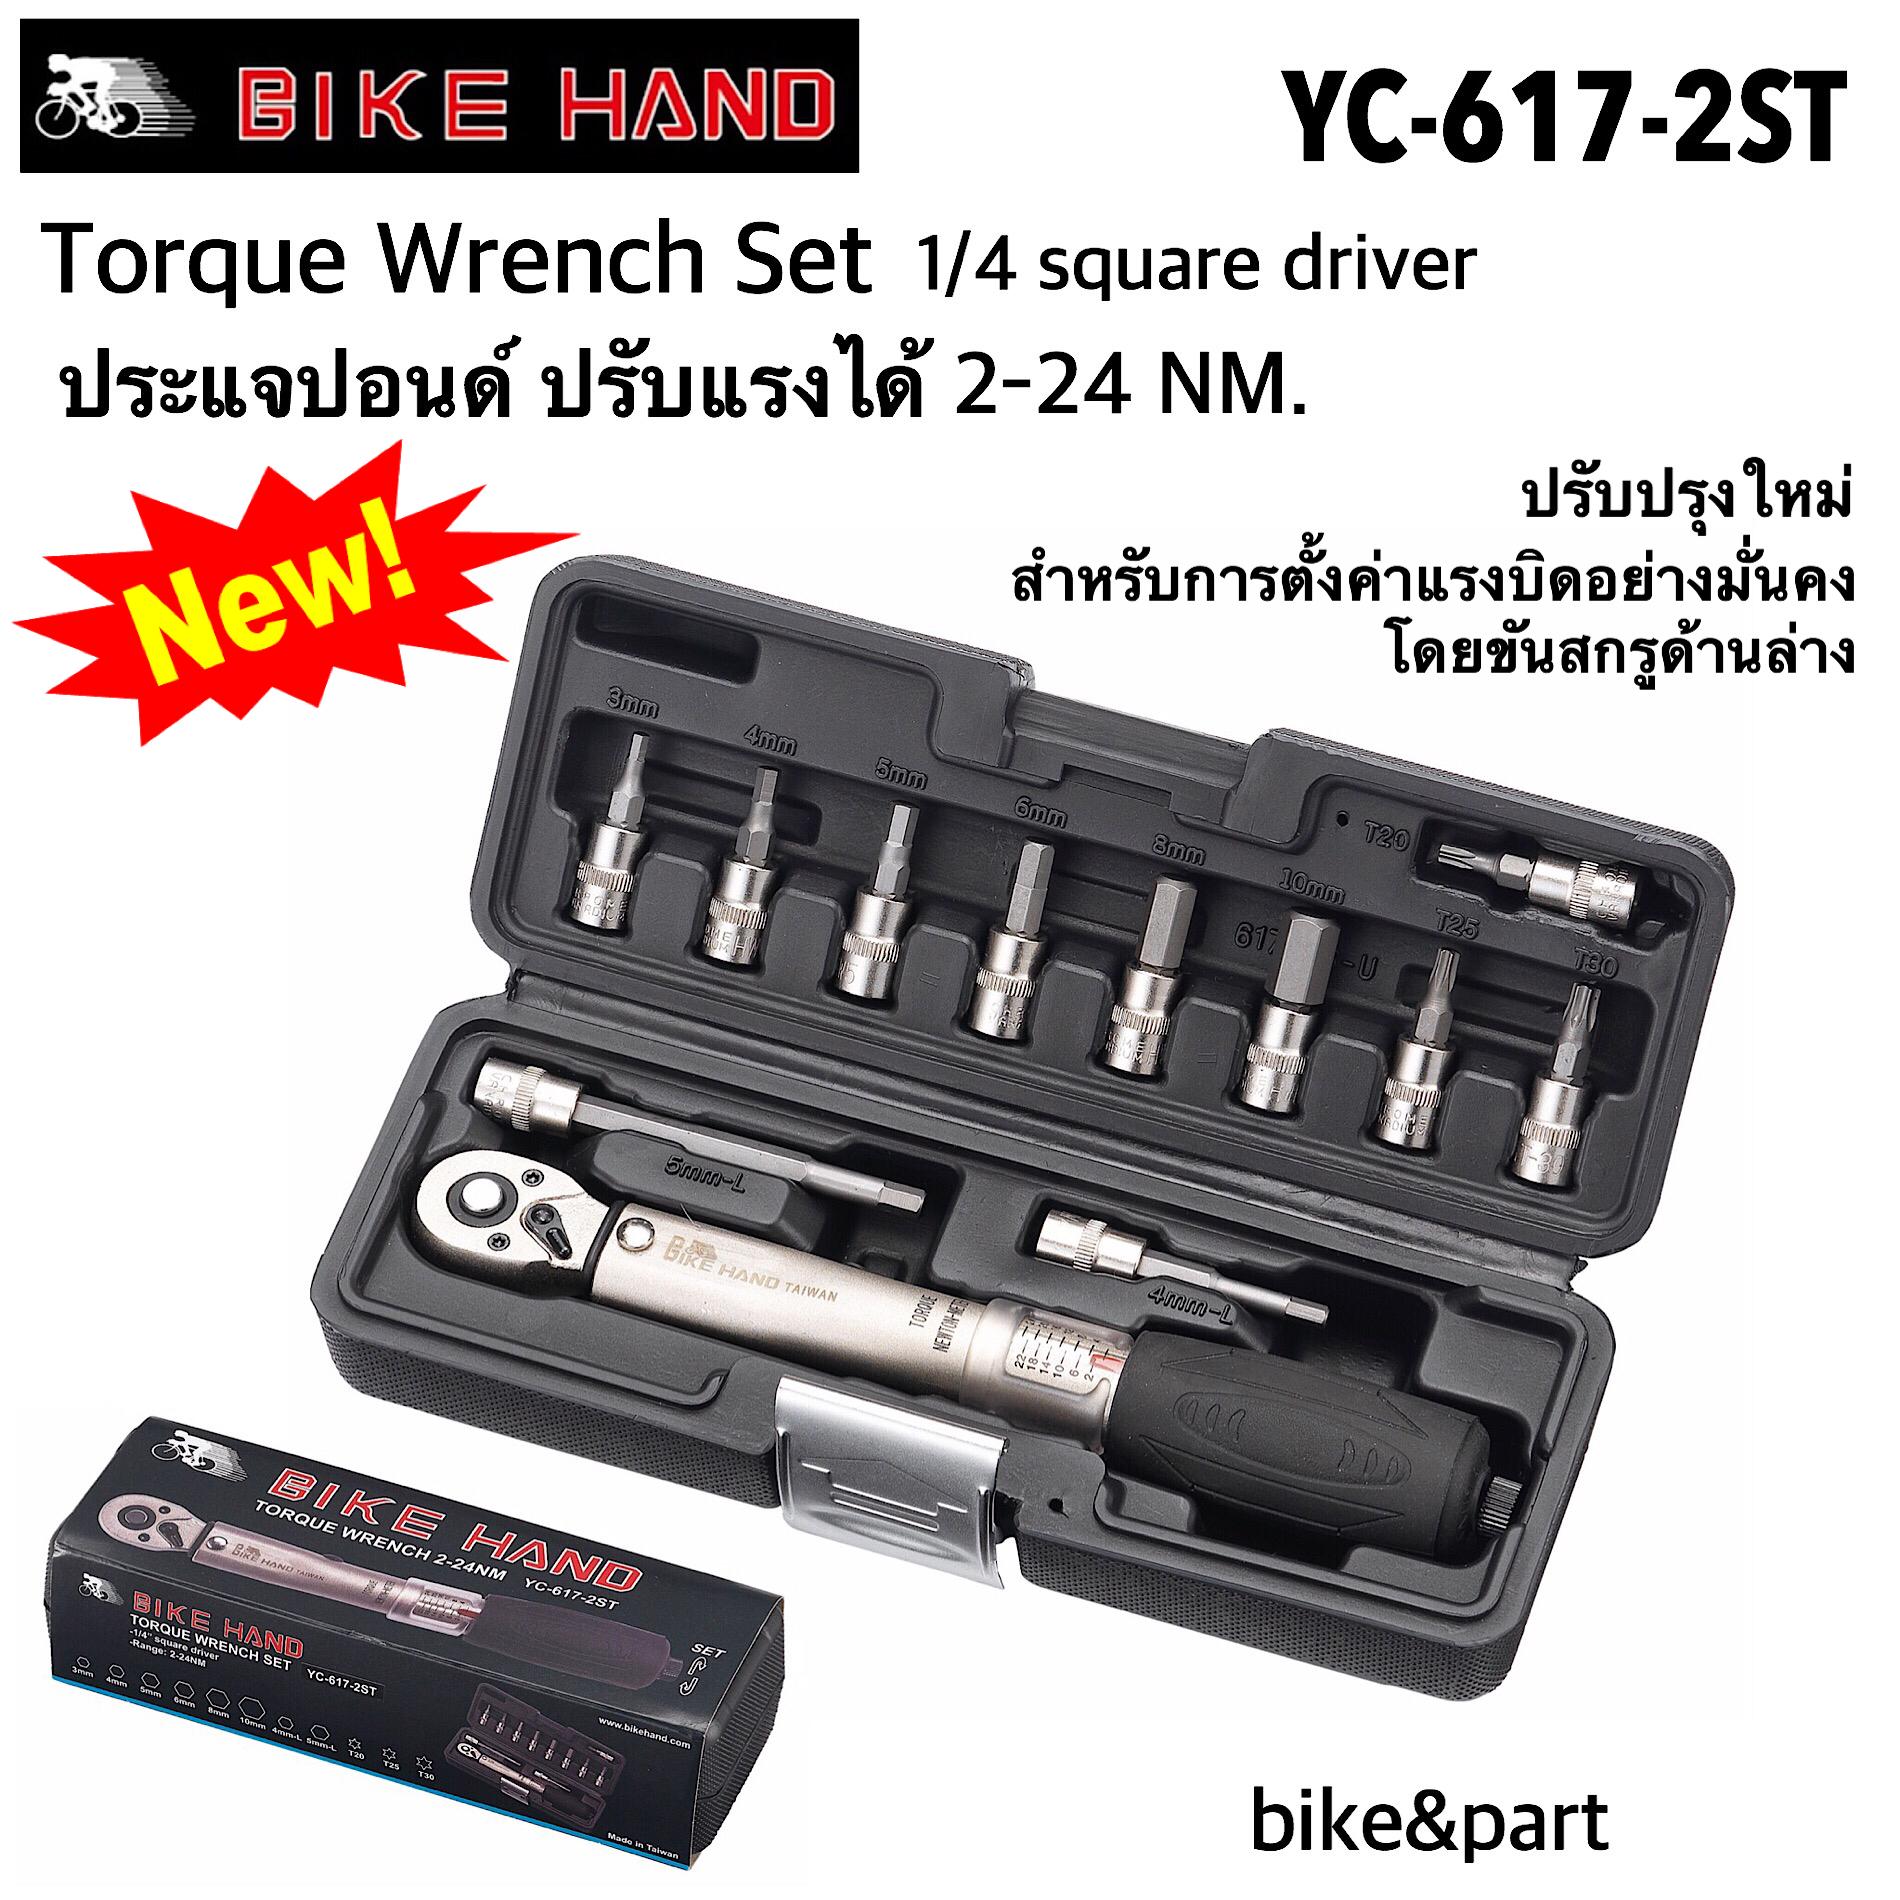 ประแจปอนด์ Bike Hand YC-617-2ST